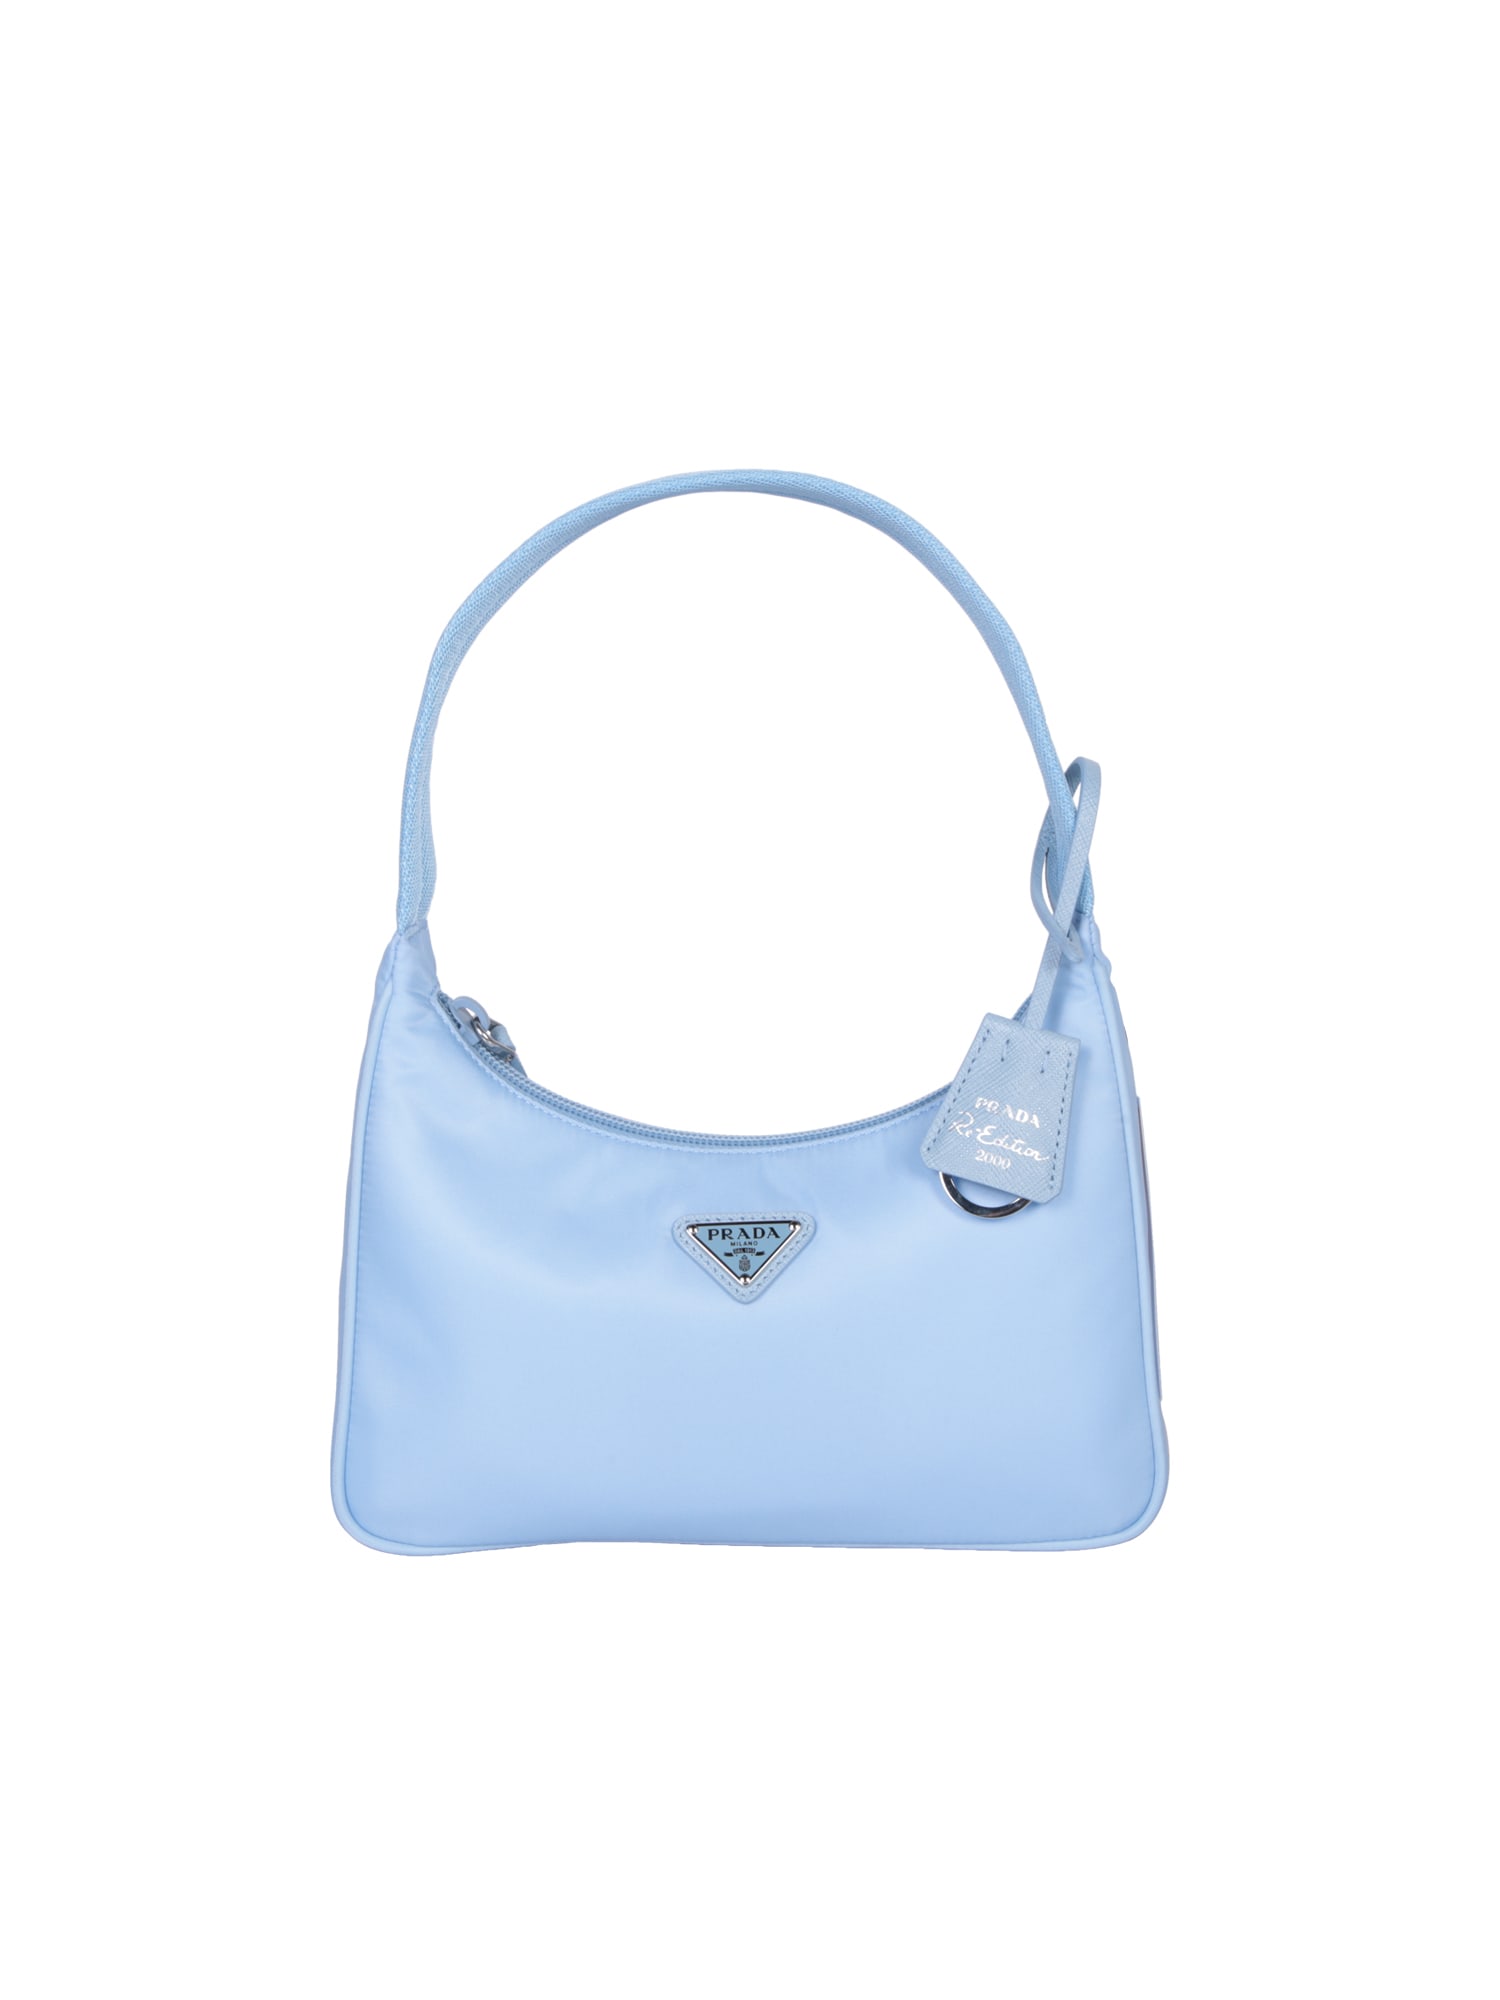 Prada Re-nylon Light Blue Bag